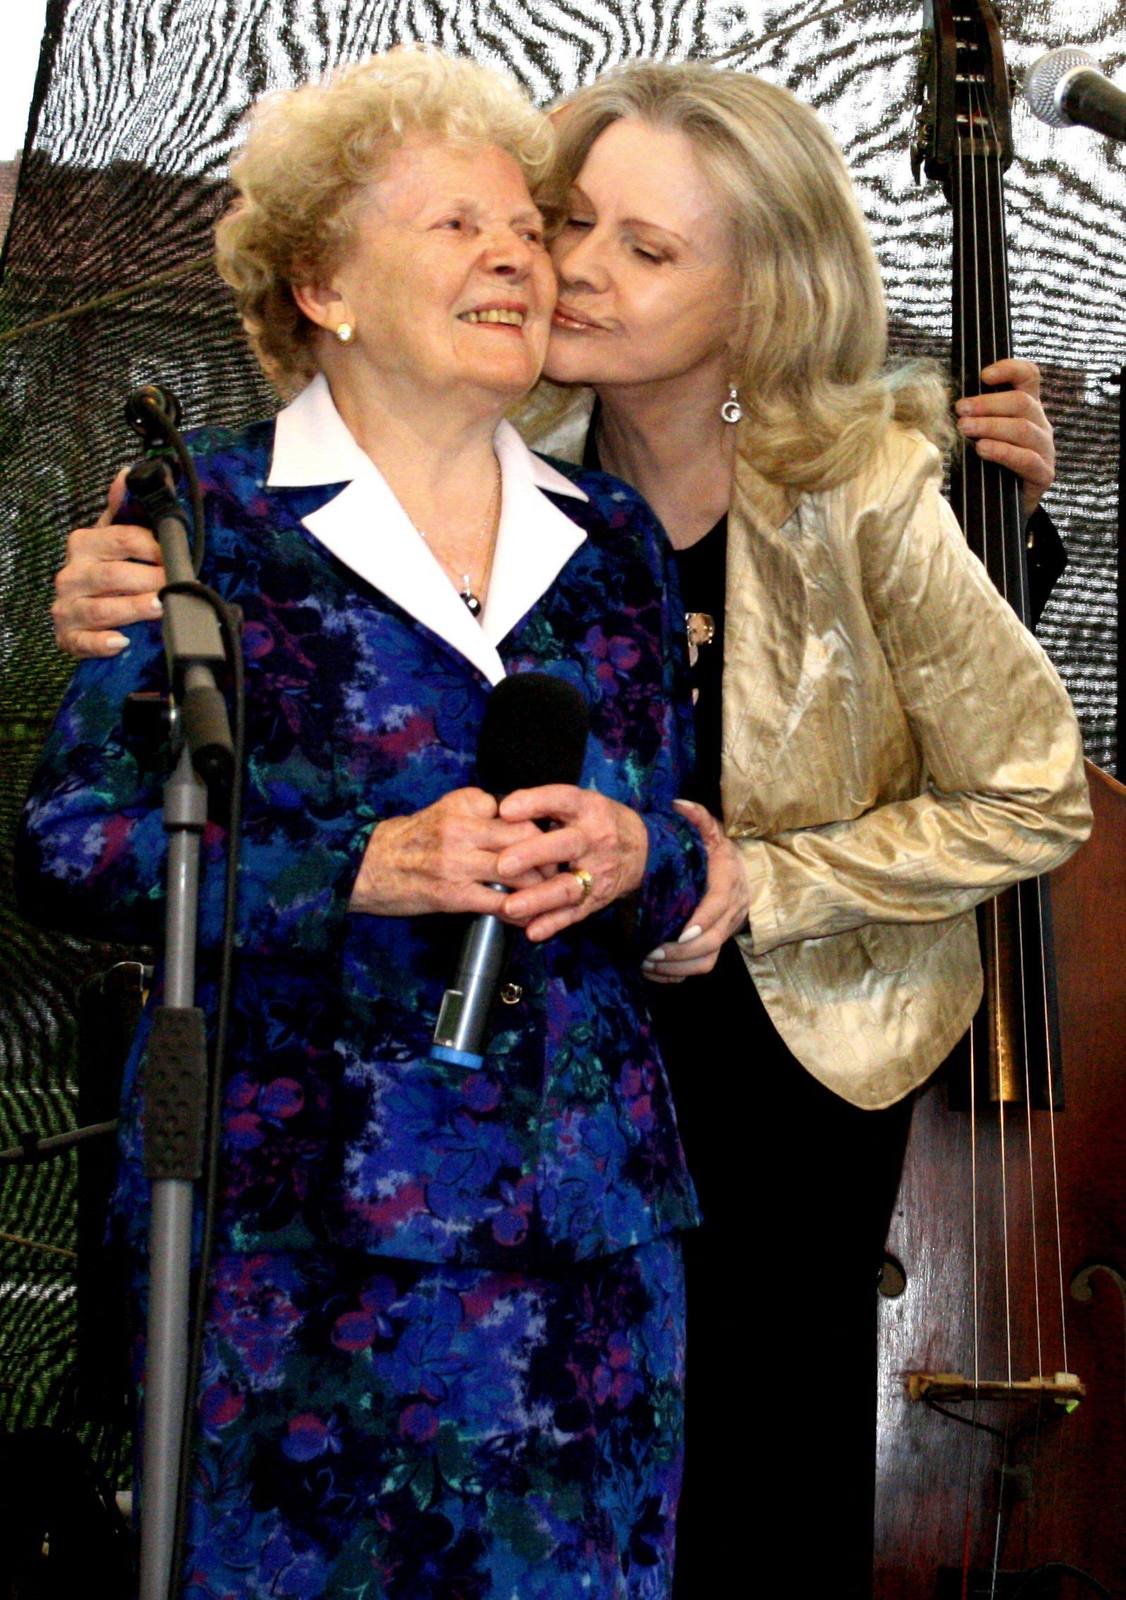 Eva Pilarová s maminkou Františkou